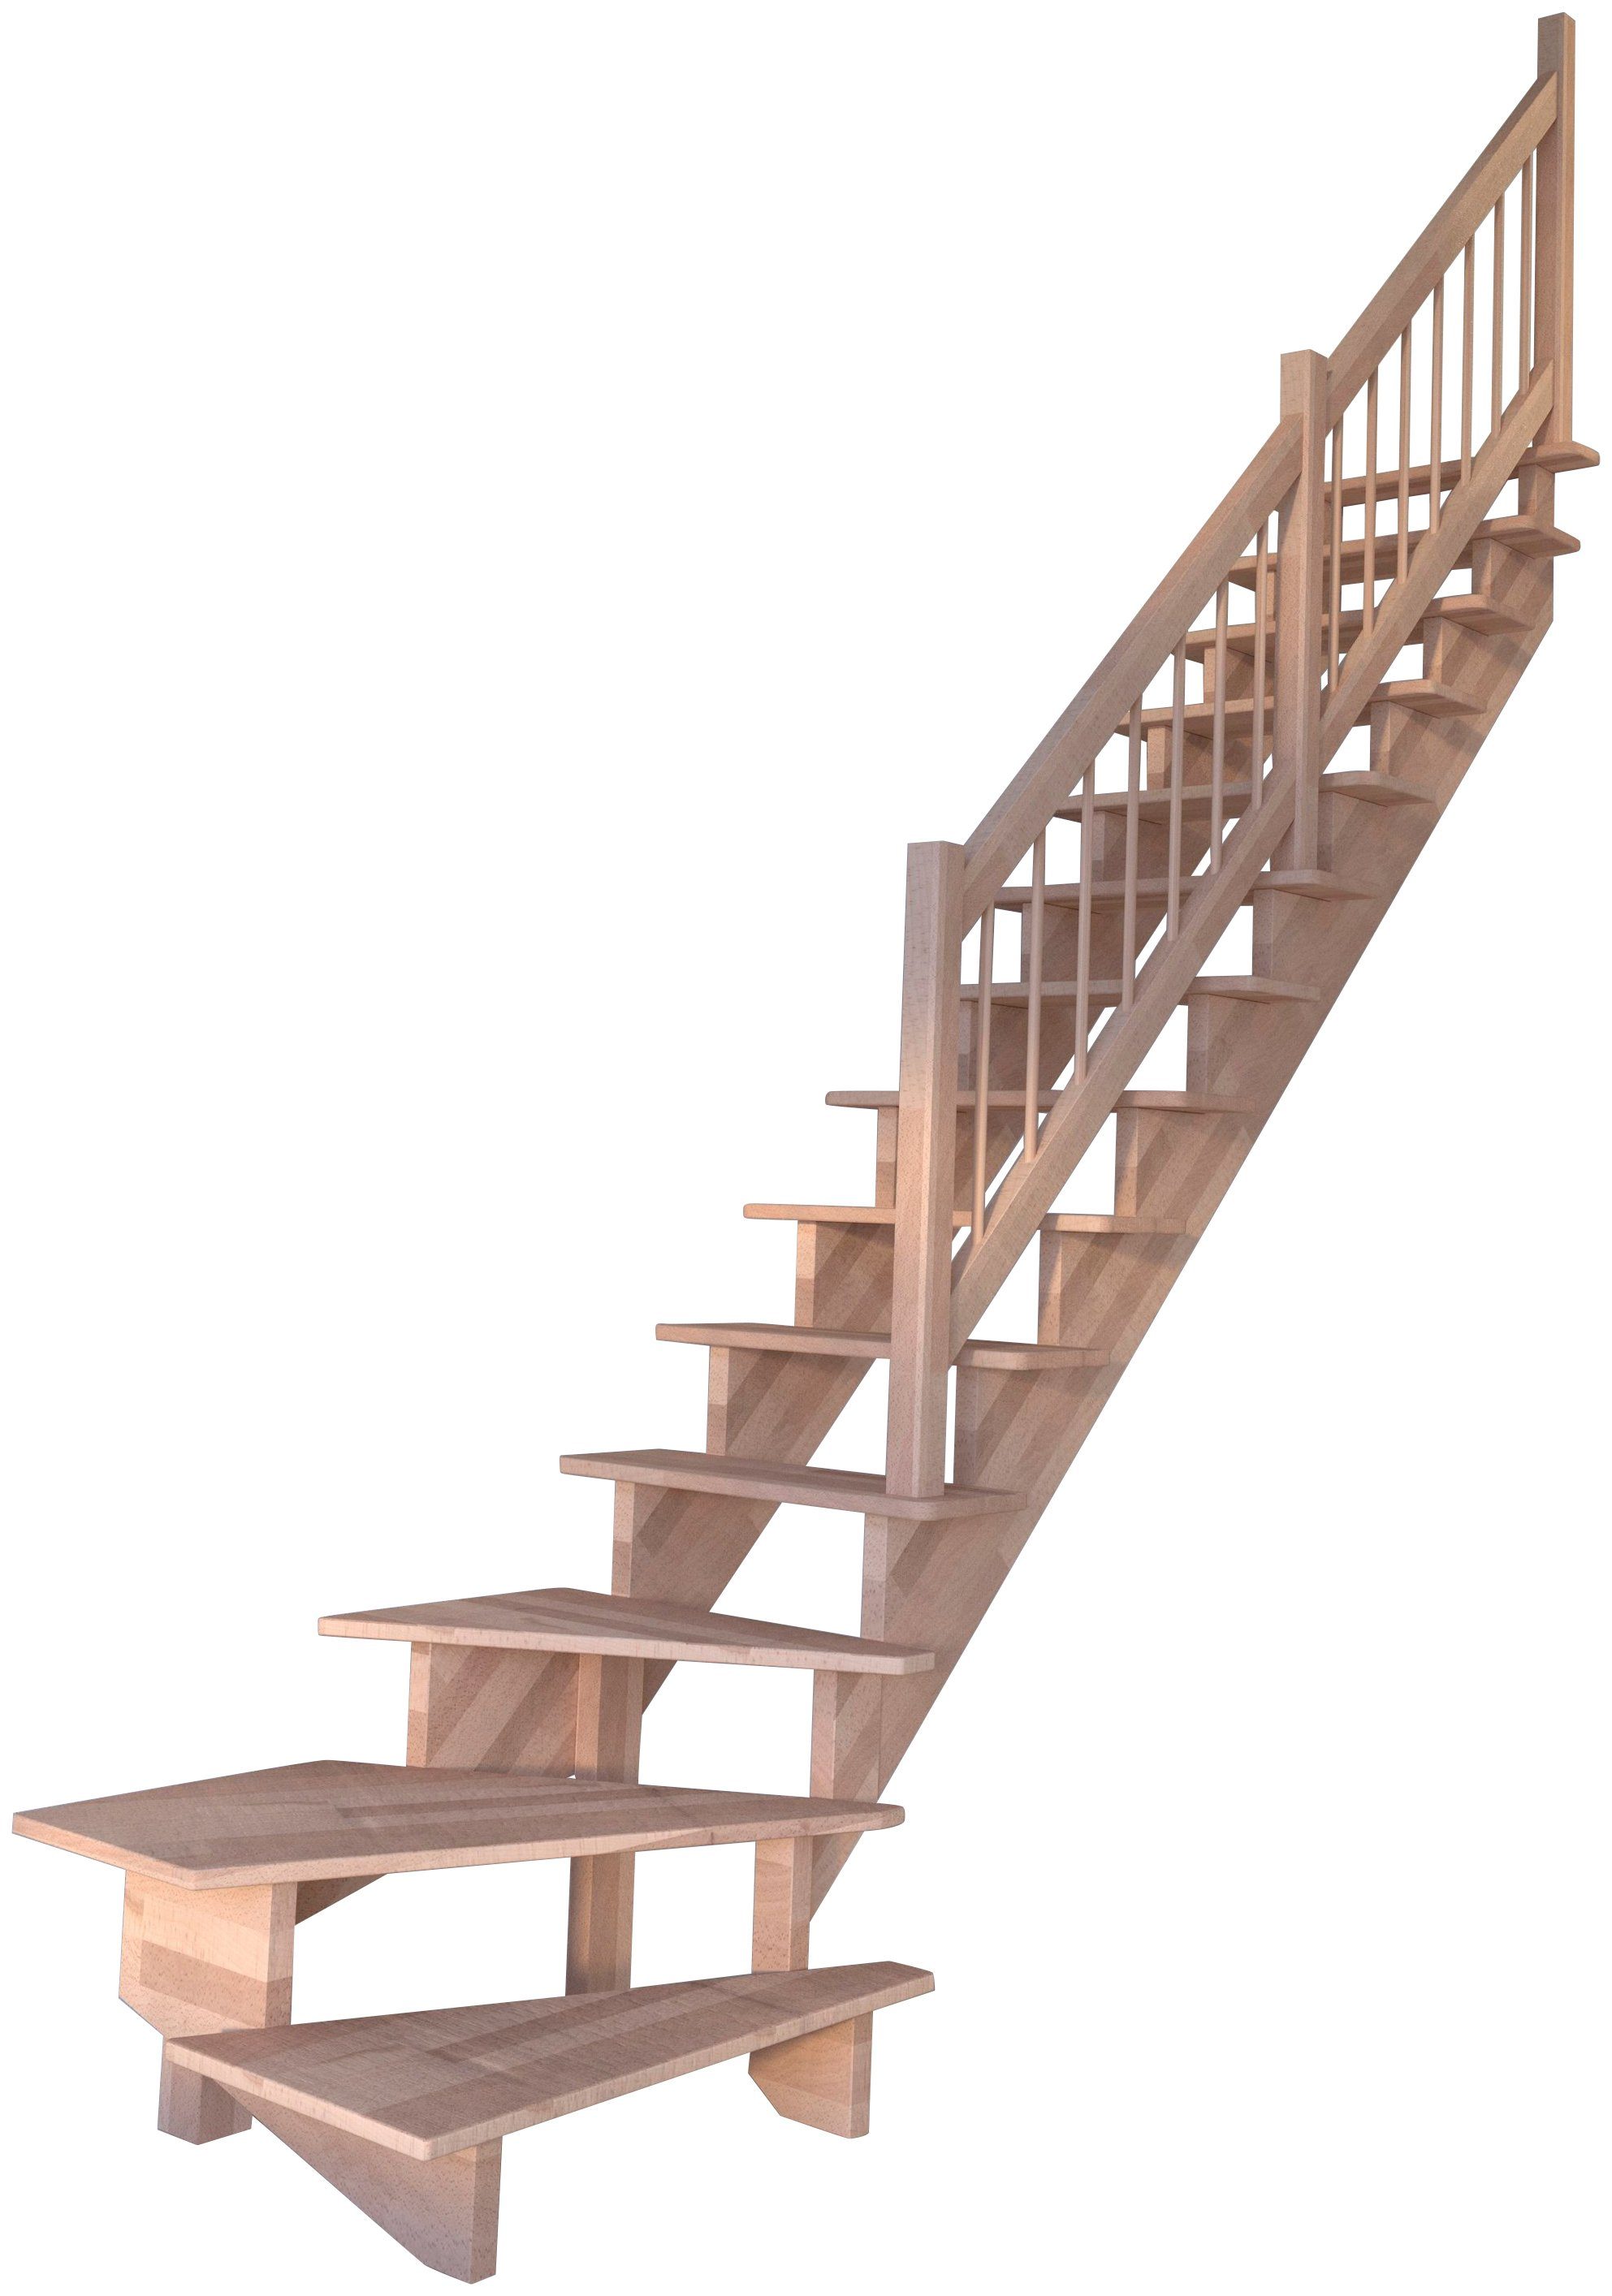 Starwood Systemtreppe Massivholz Lindos, Holz-Holz Design Geländer, für Geschosshöhen bis 300 cm, Stufen offen, gewendelt Rechts, Durchgehende Wangenteile